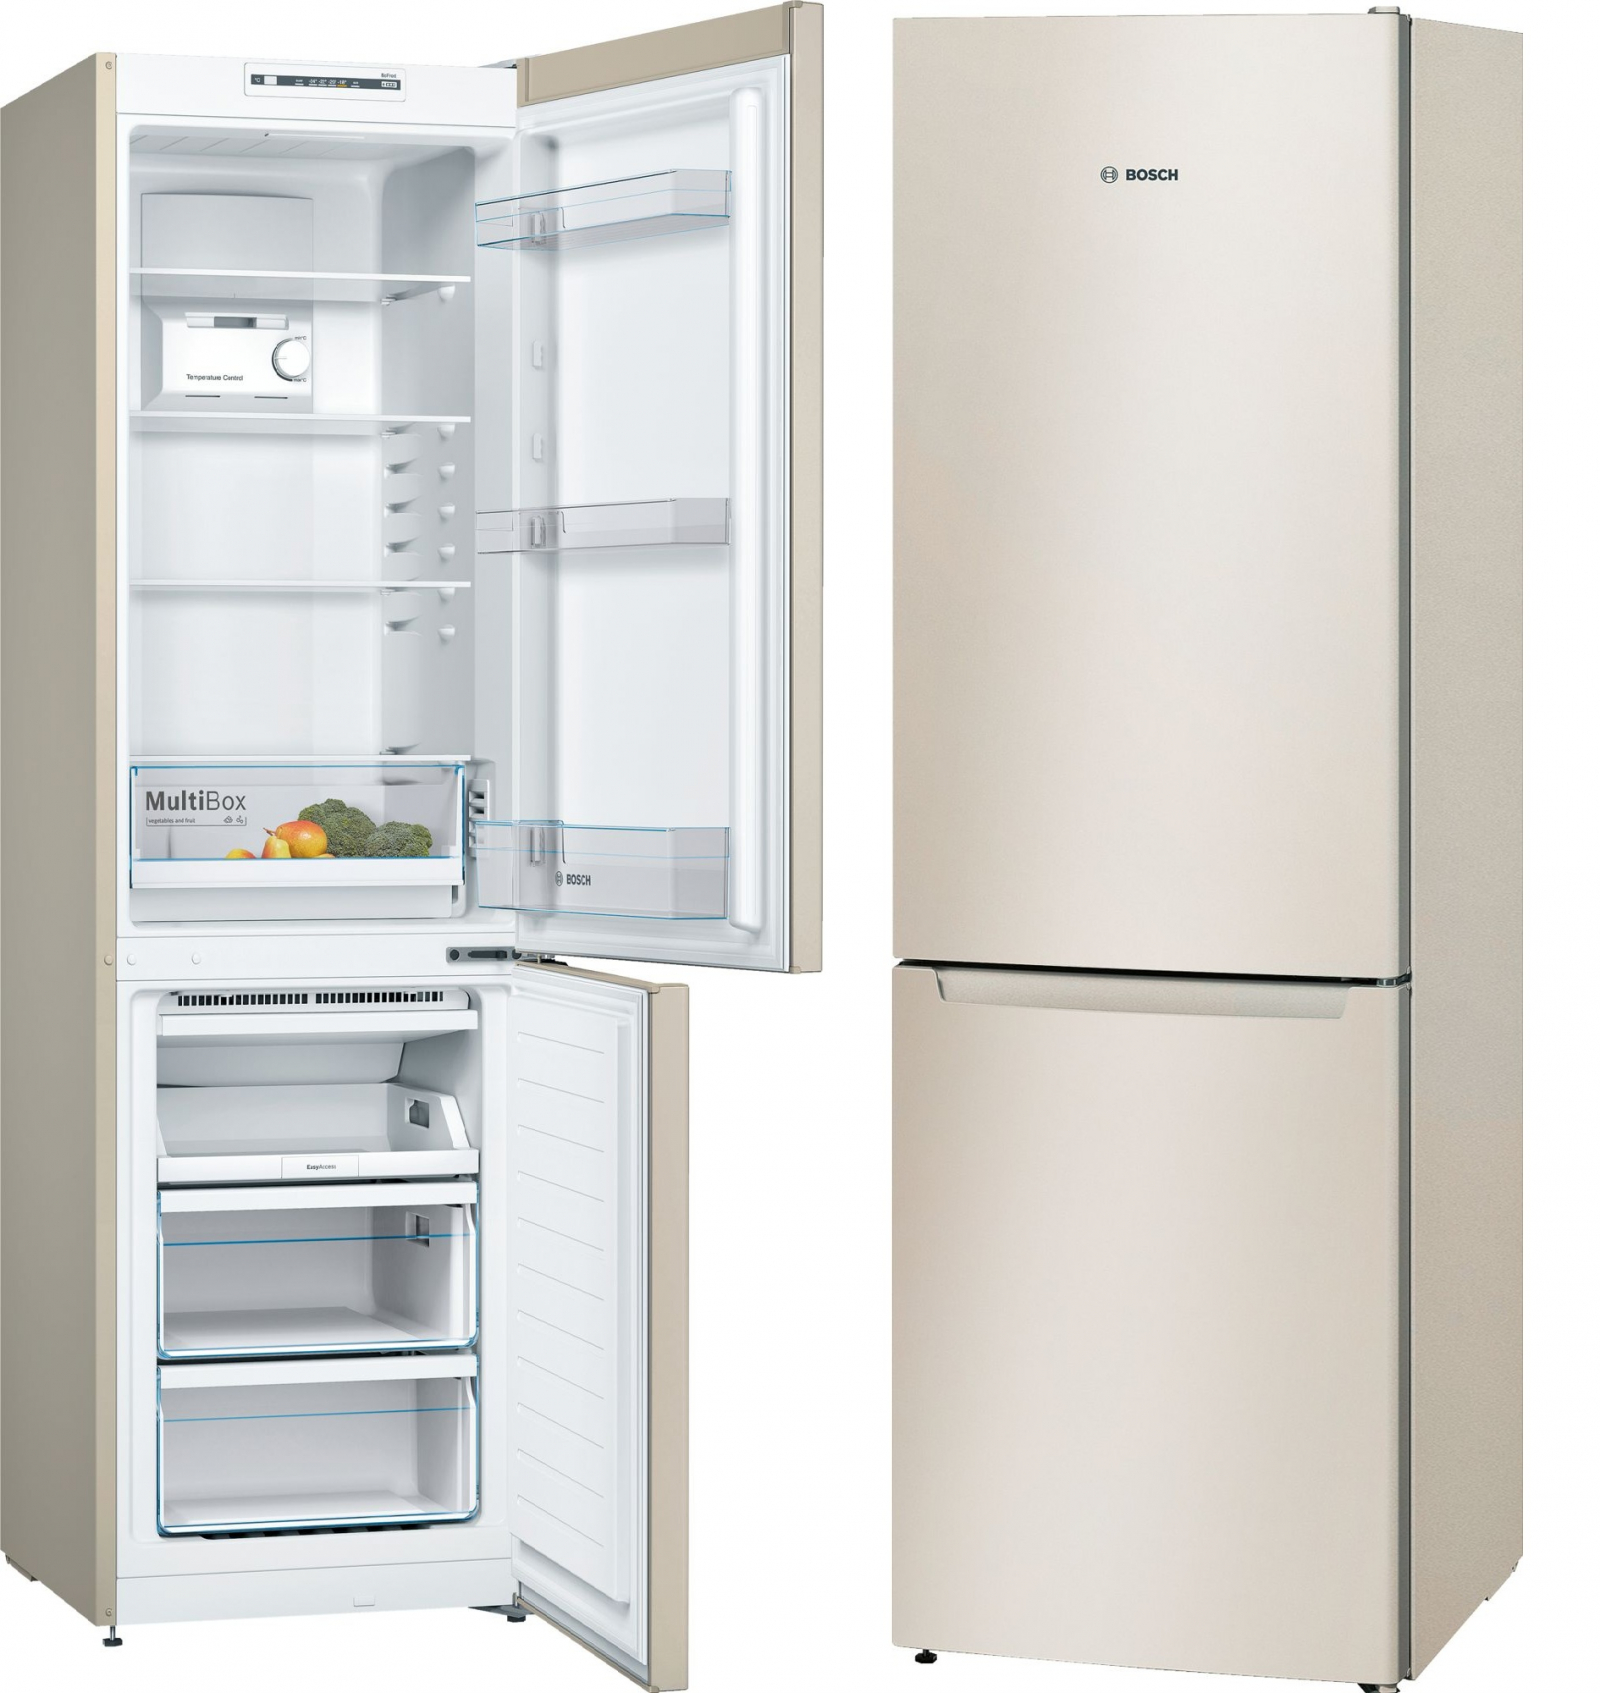 холодильник bosch kgn36nk2ar, купить в Красноярске холодильник bosch kgn36nk2ar,  купить в Красноярске дешево холодильник bosch kgn36nk2ar, купить в Красноярске минимальной цене холодильник bosch kgn36nk2ar